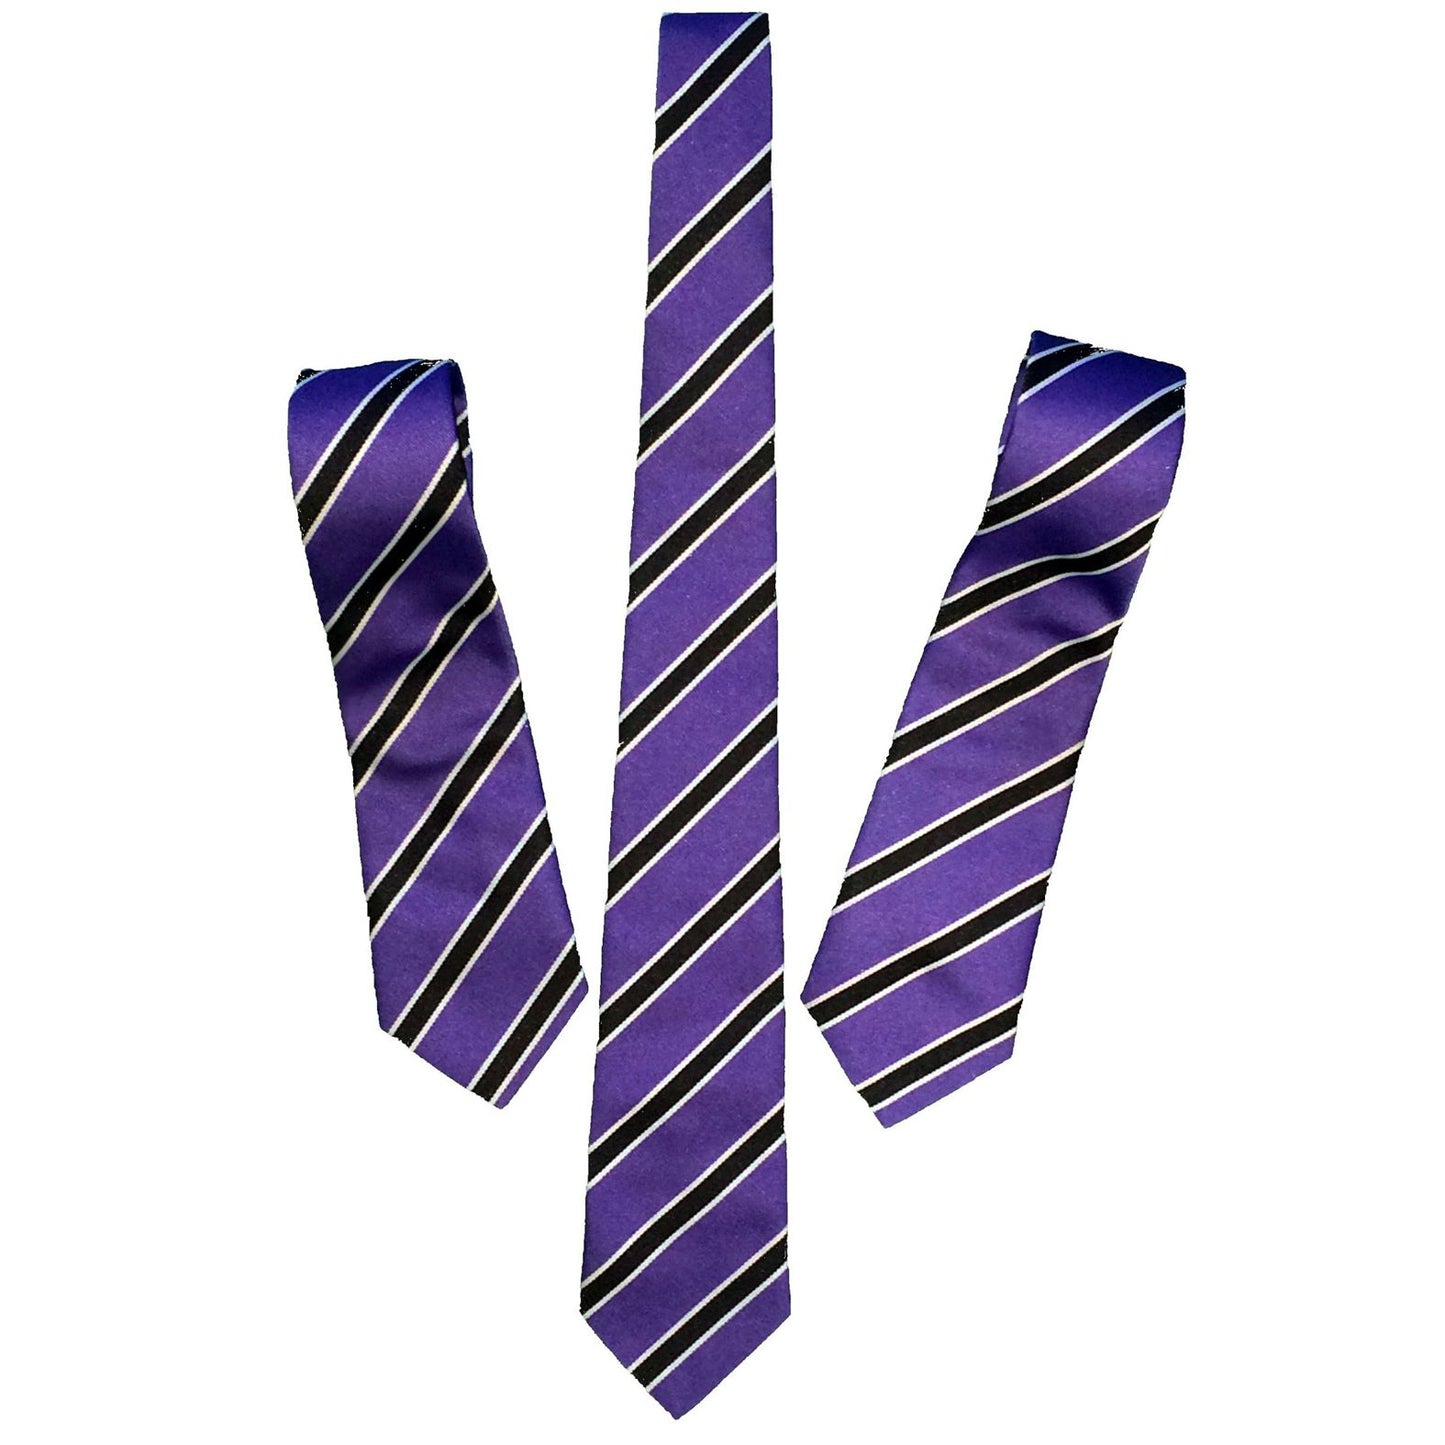 UALS School Tie